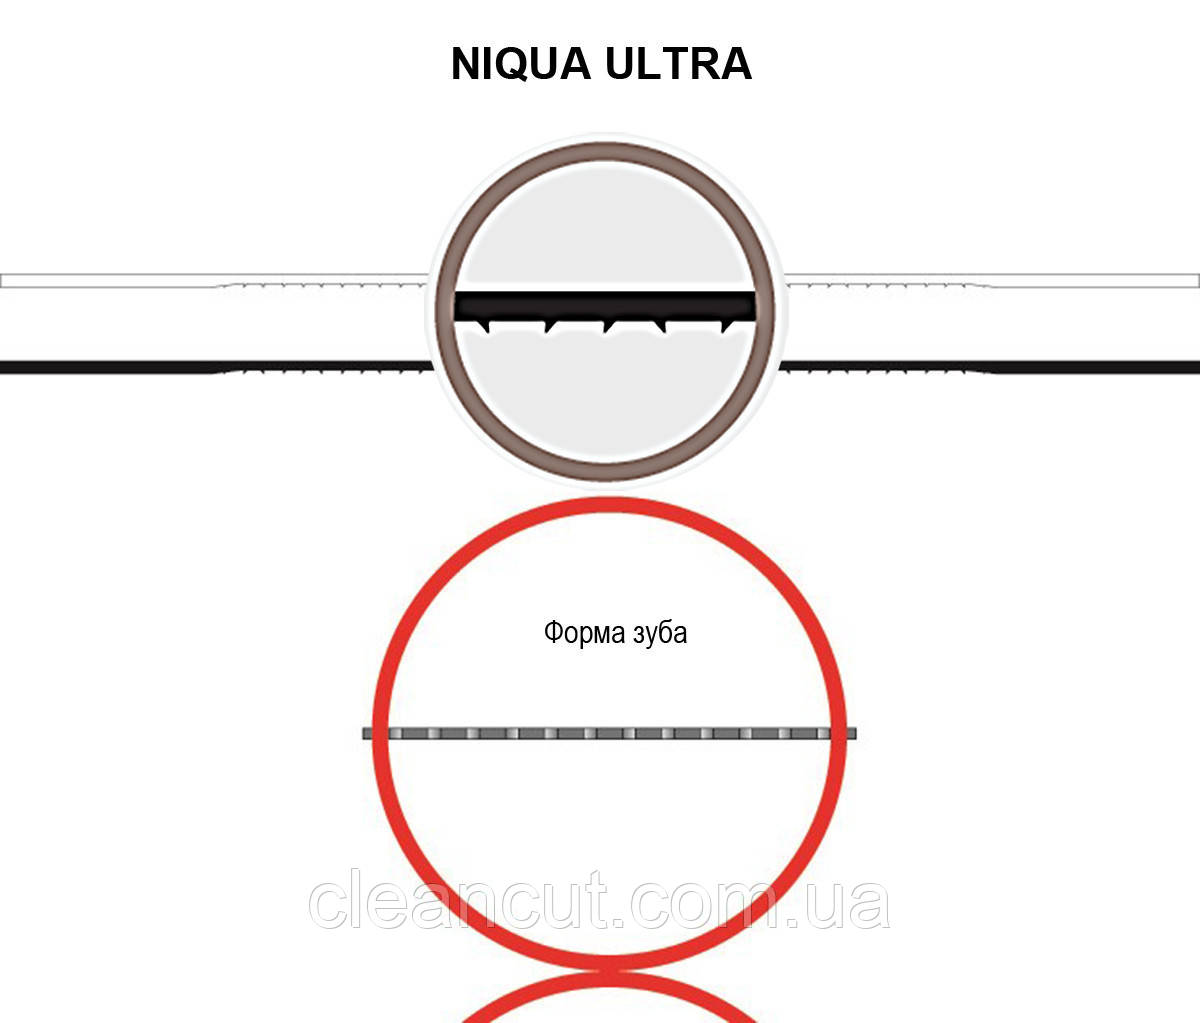 Пилка для лобзикових верстатів NIQUA ULTRA No7, комплект 6 шт.